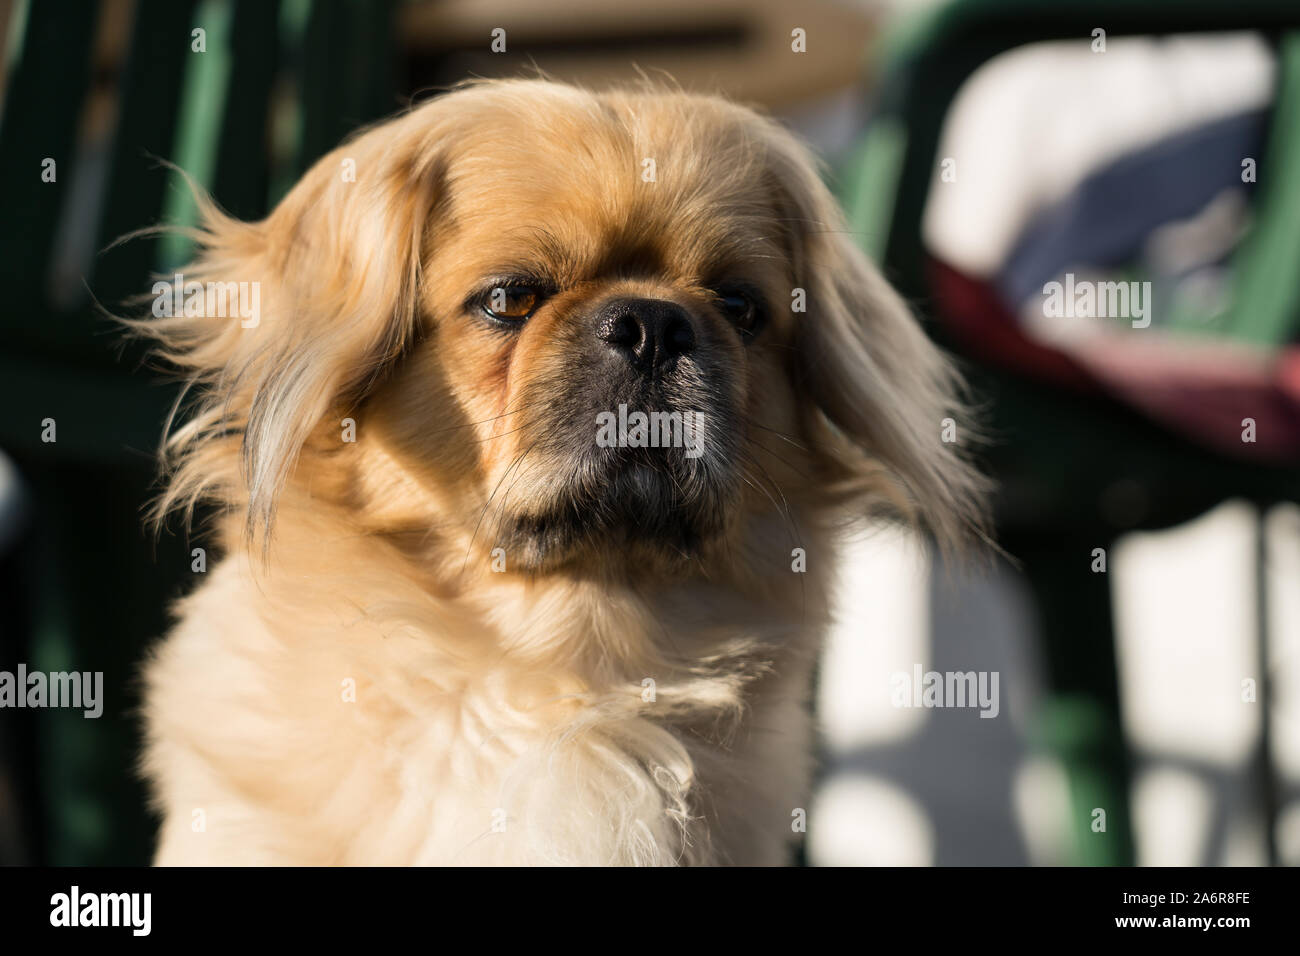 Male pekingese dog Stock Photo